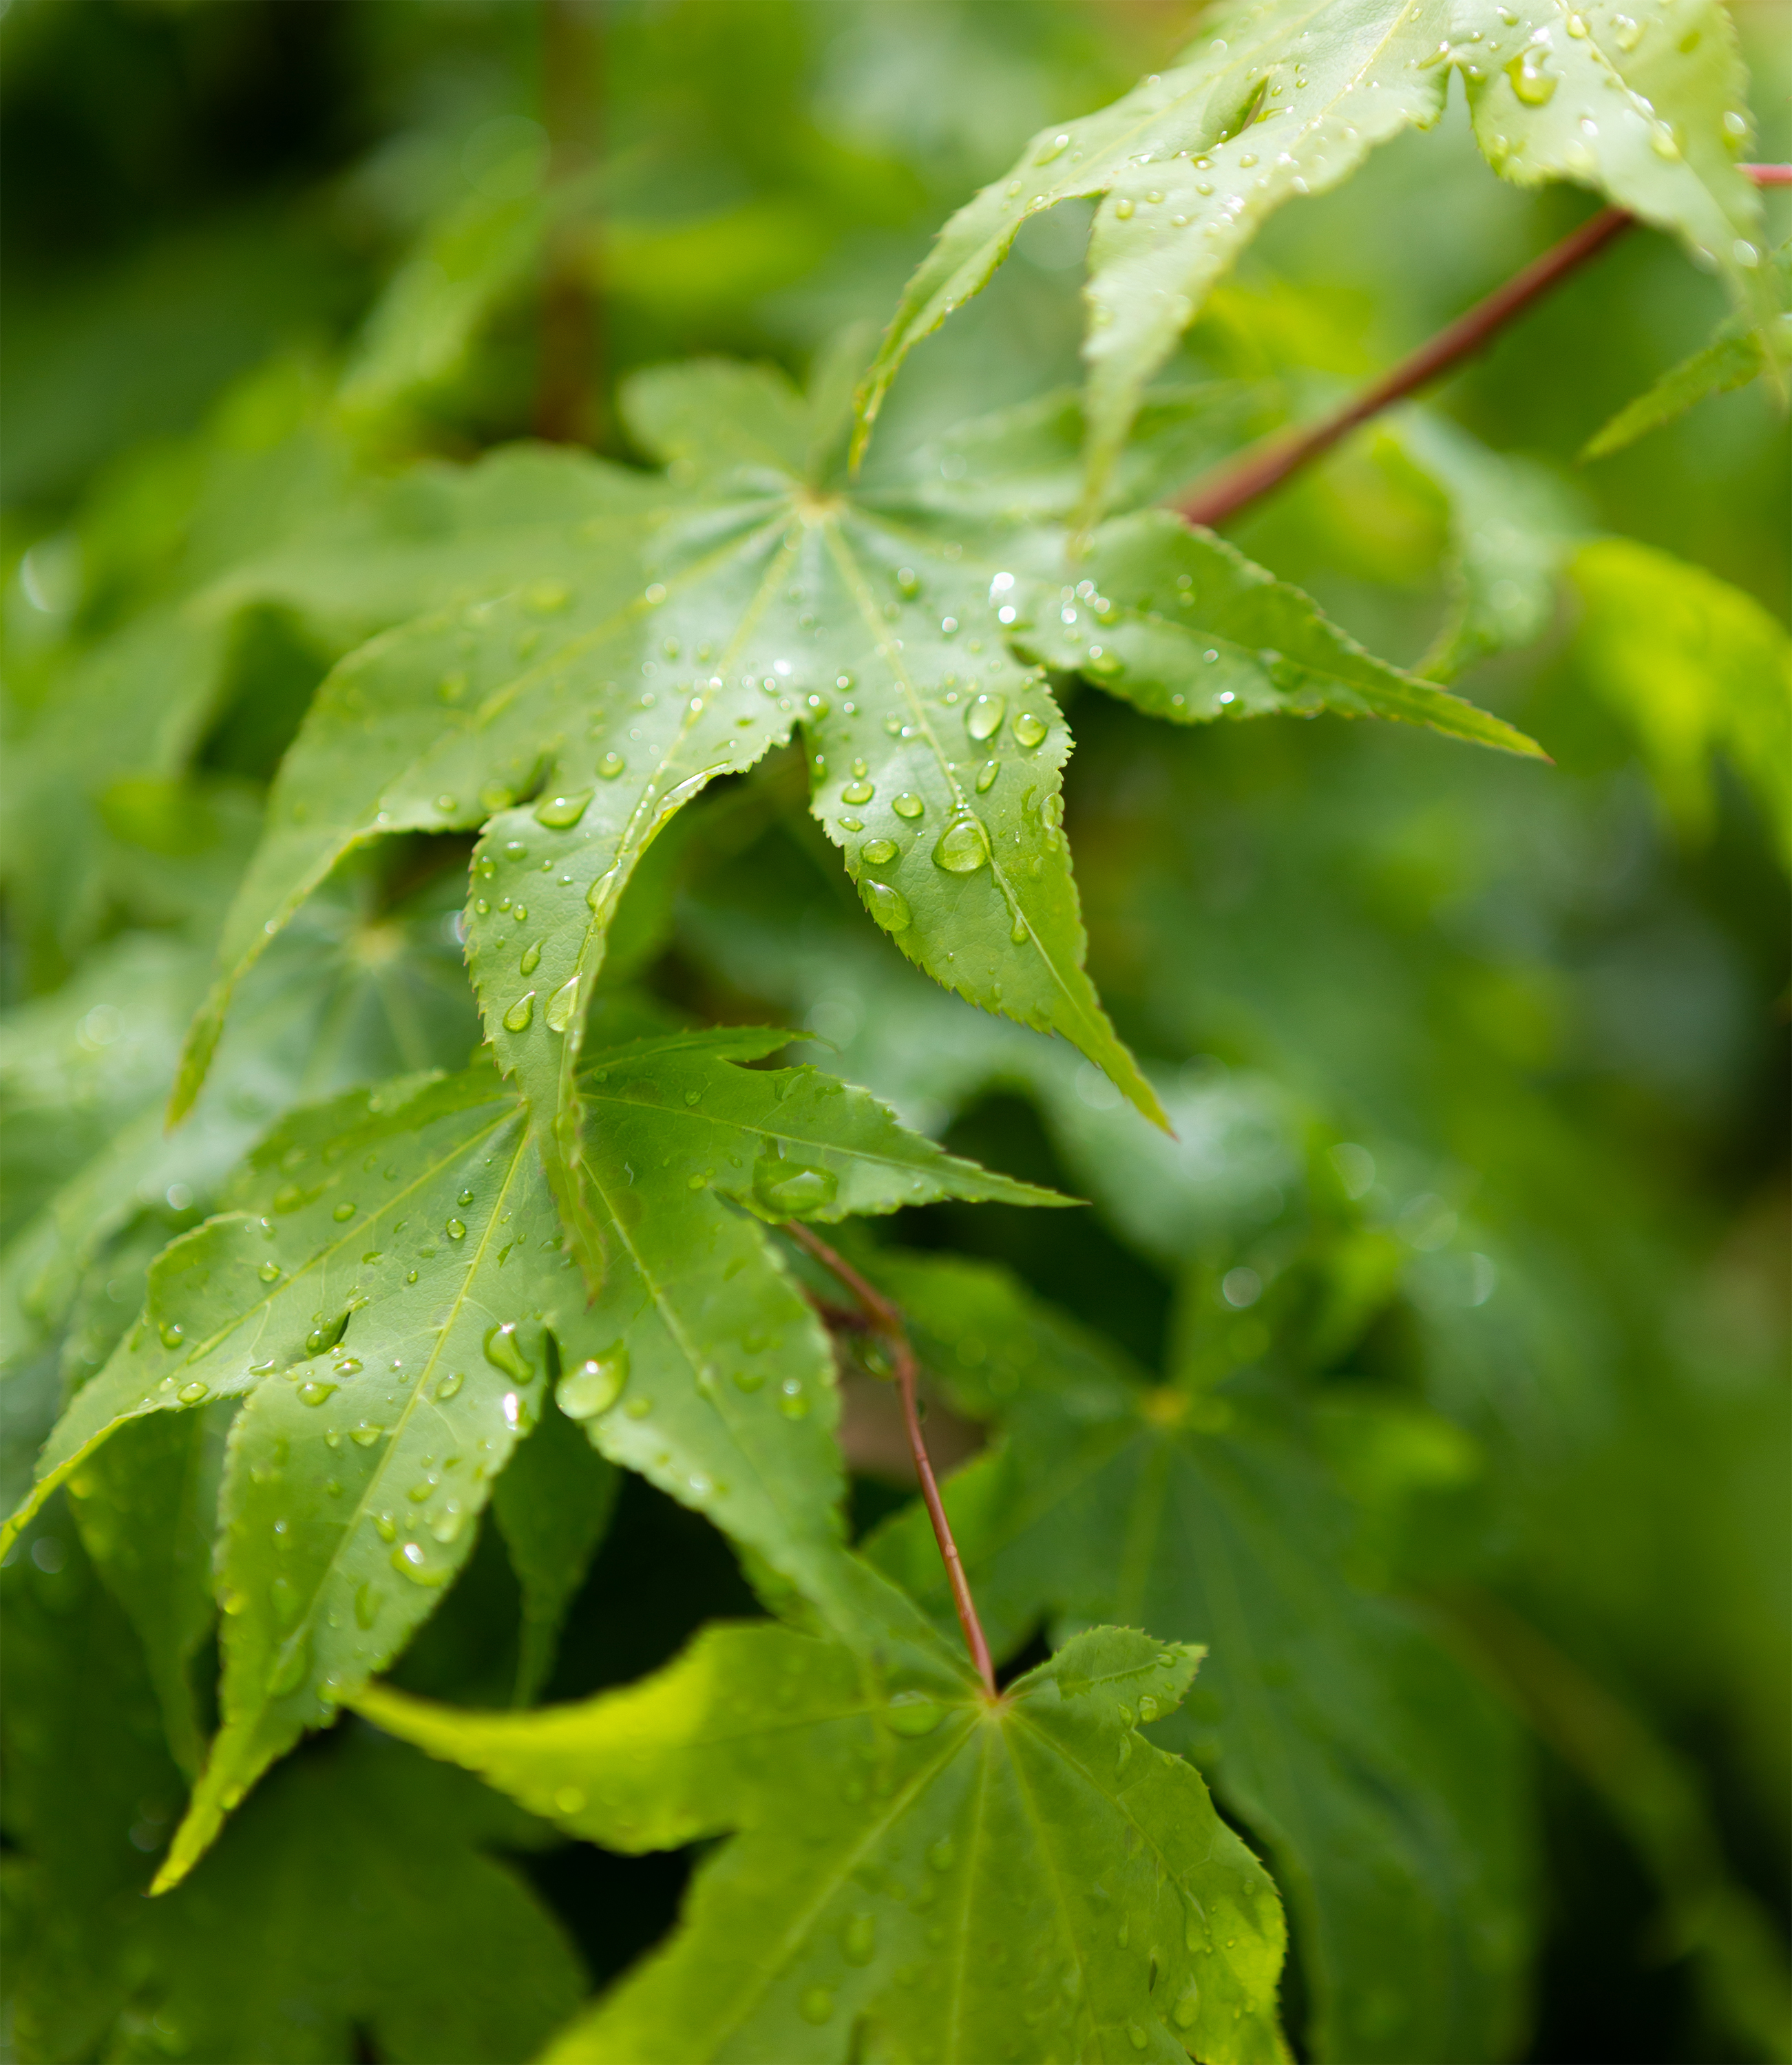 雨上がりの緑のオオモミジの葉03 無料の高画質フリー写真素材 イメージズラボ